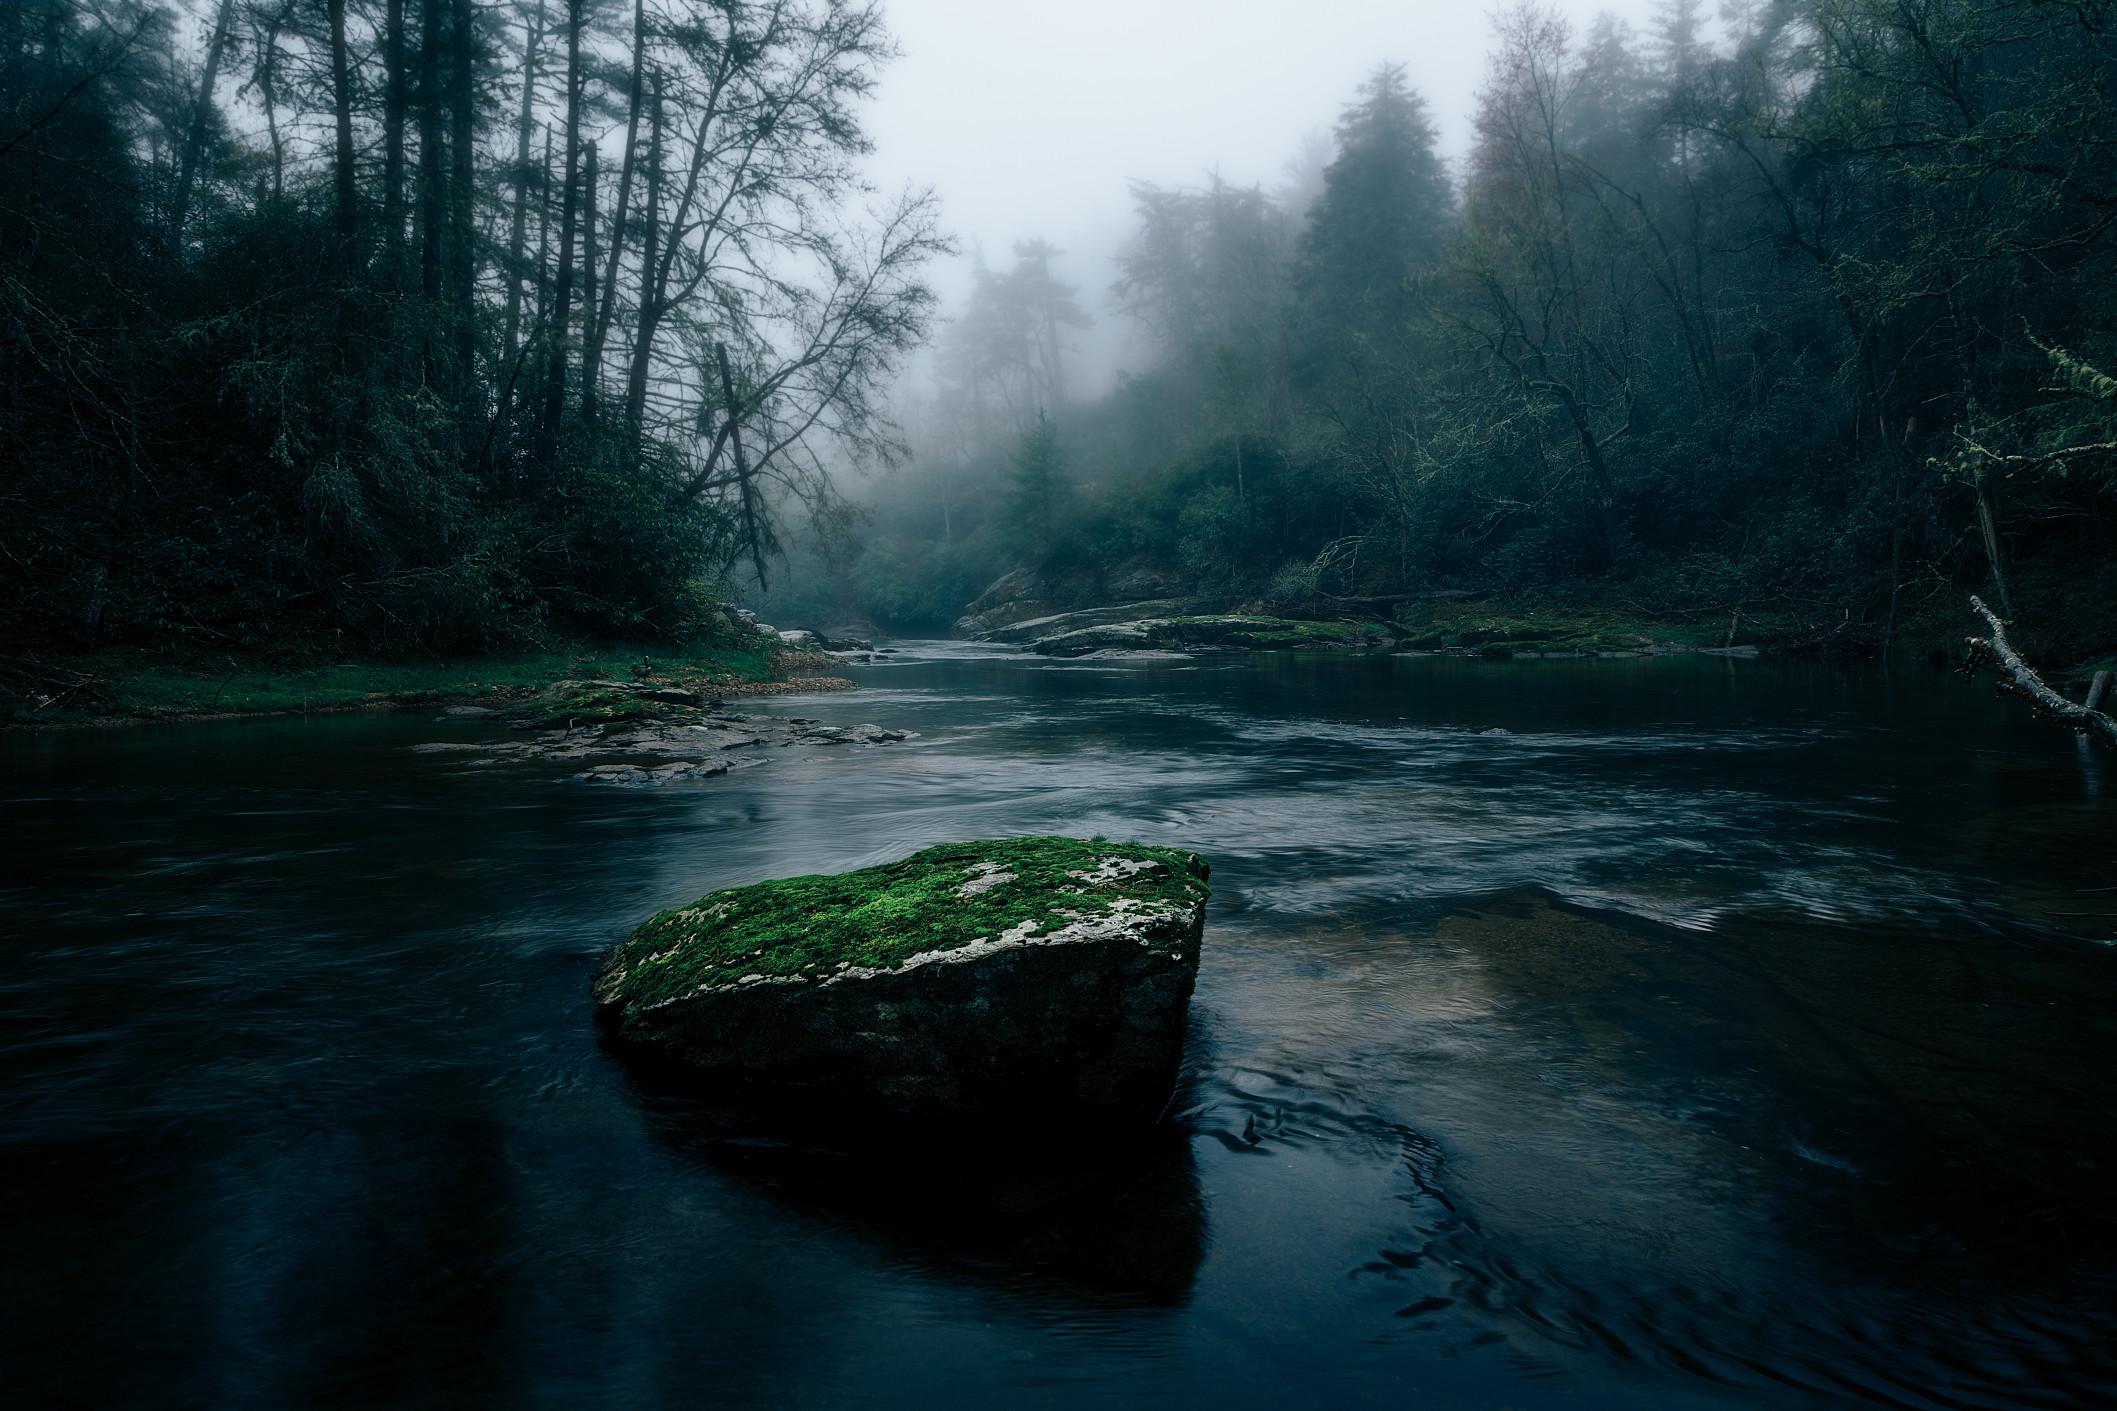 黑暗的河流与岩石突出水面,创建一个障碍物。